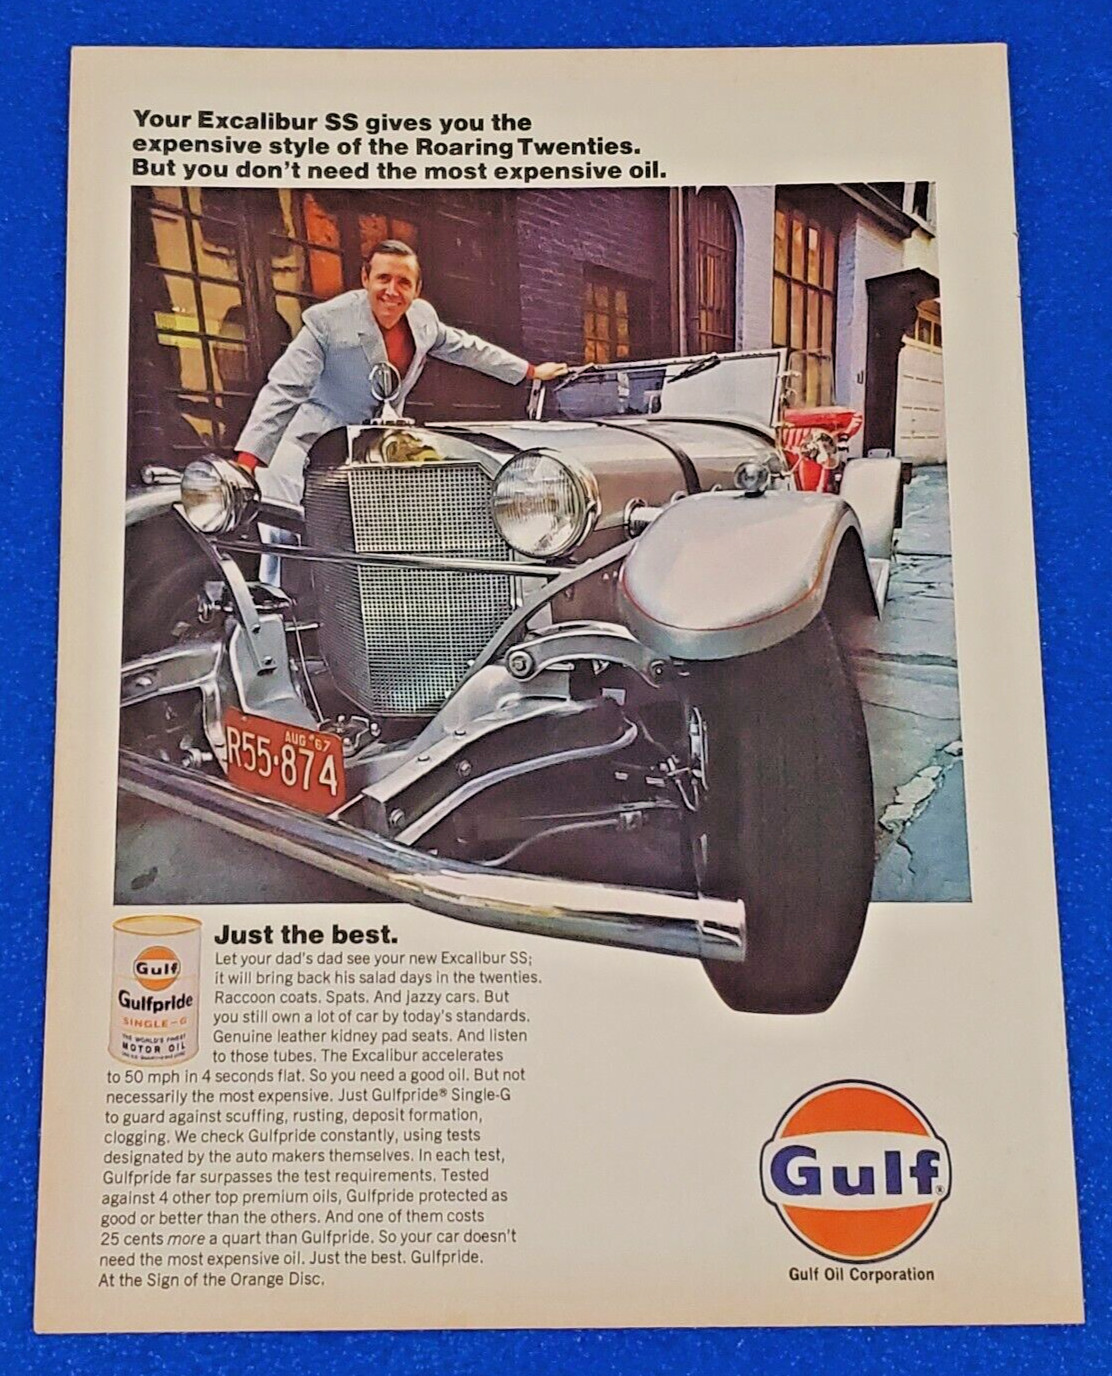 1968 GULF OIL CORPORATION ORIGINAL COLOR PRINT AD GULFPRIDE SINGLE G MOTOR OIL